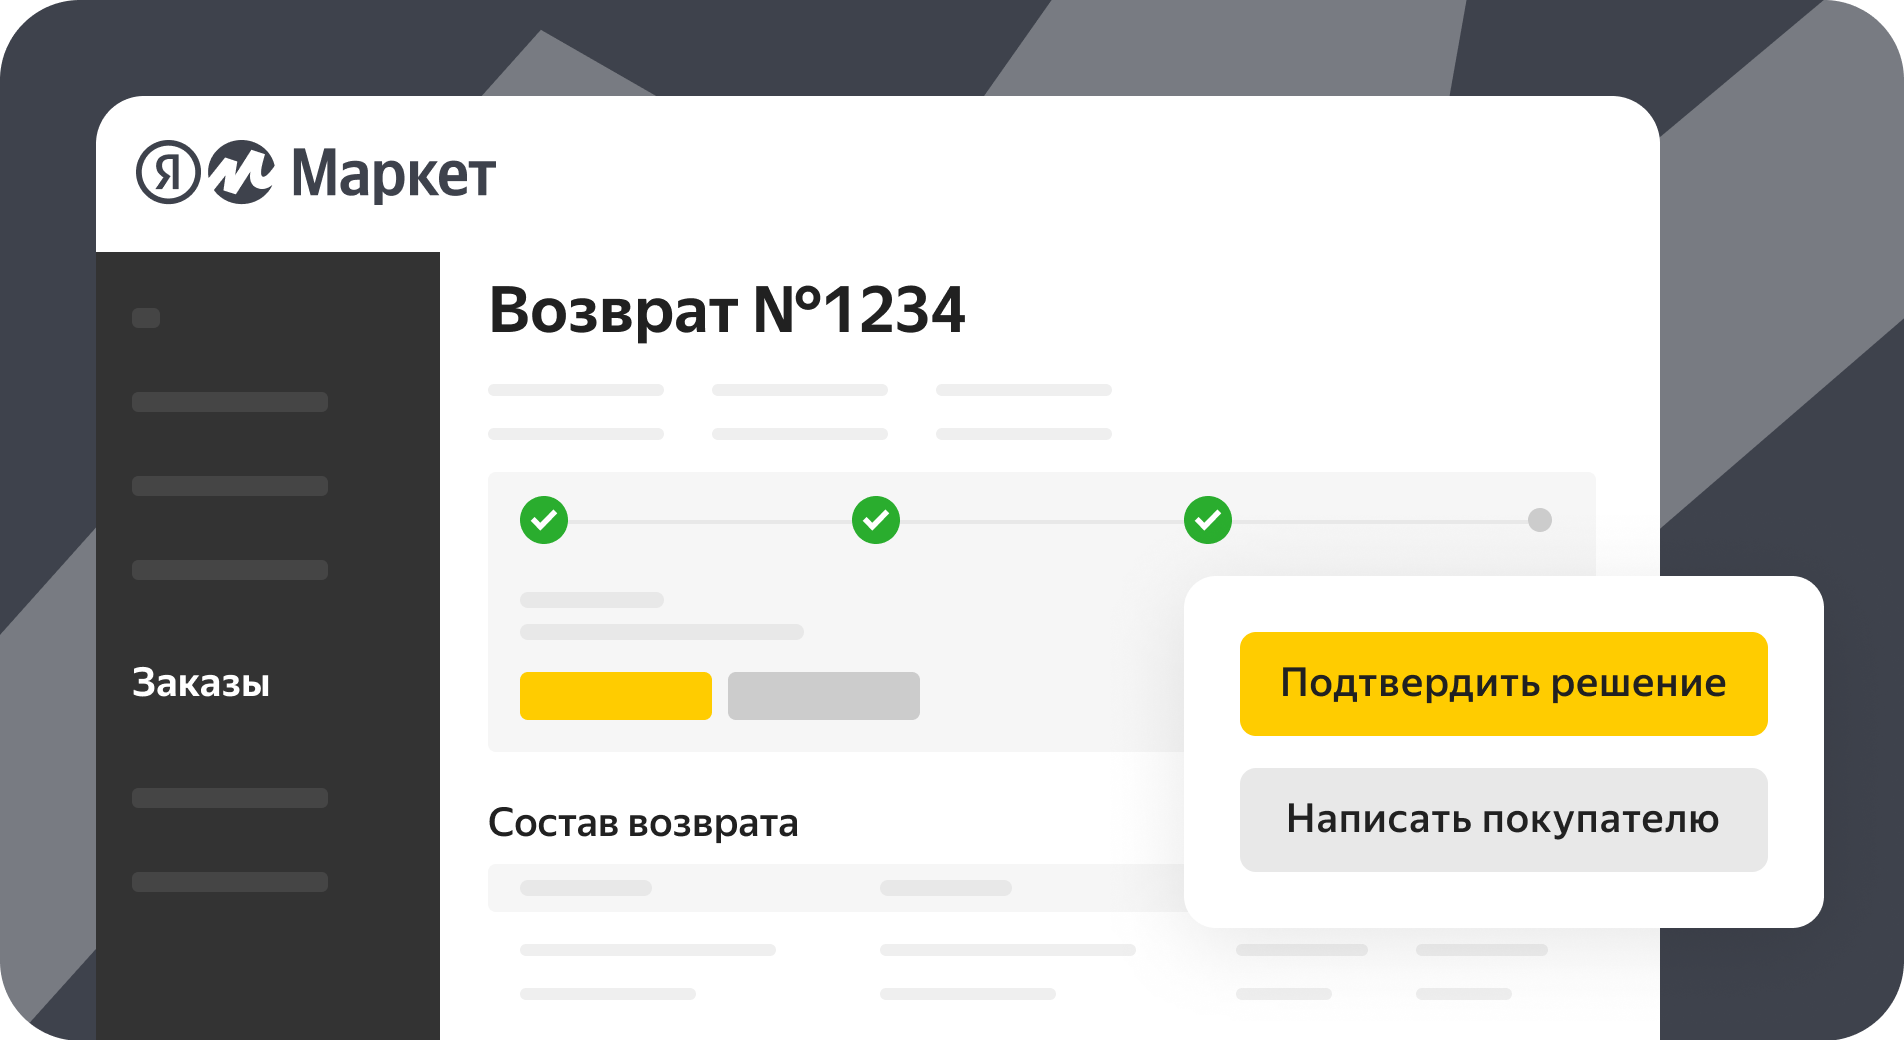 Яндекс.Маркет позволил обрабатывать возвраты в личном кабинете